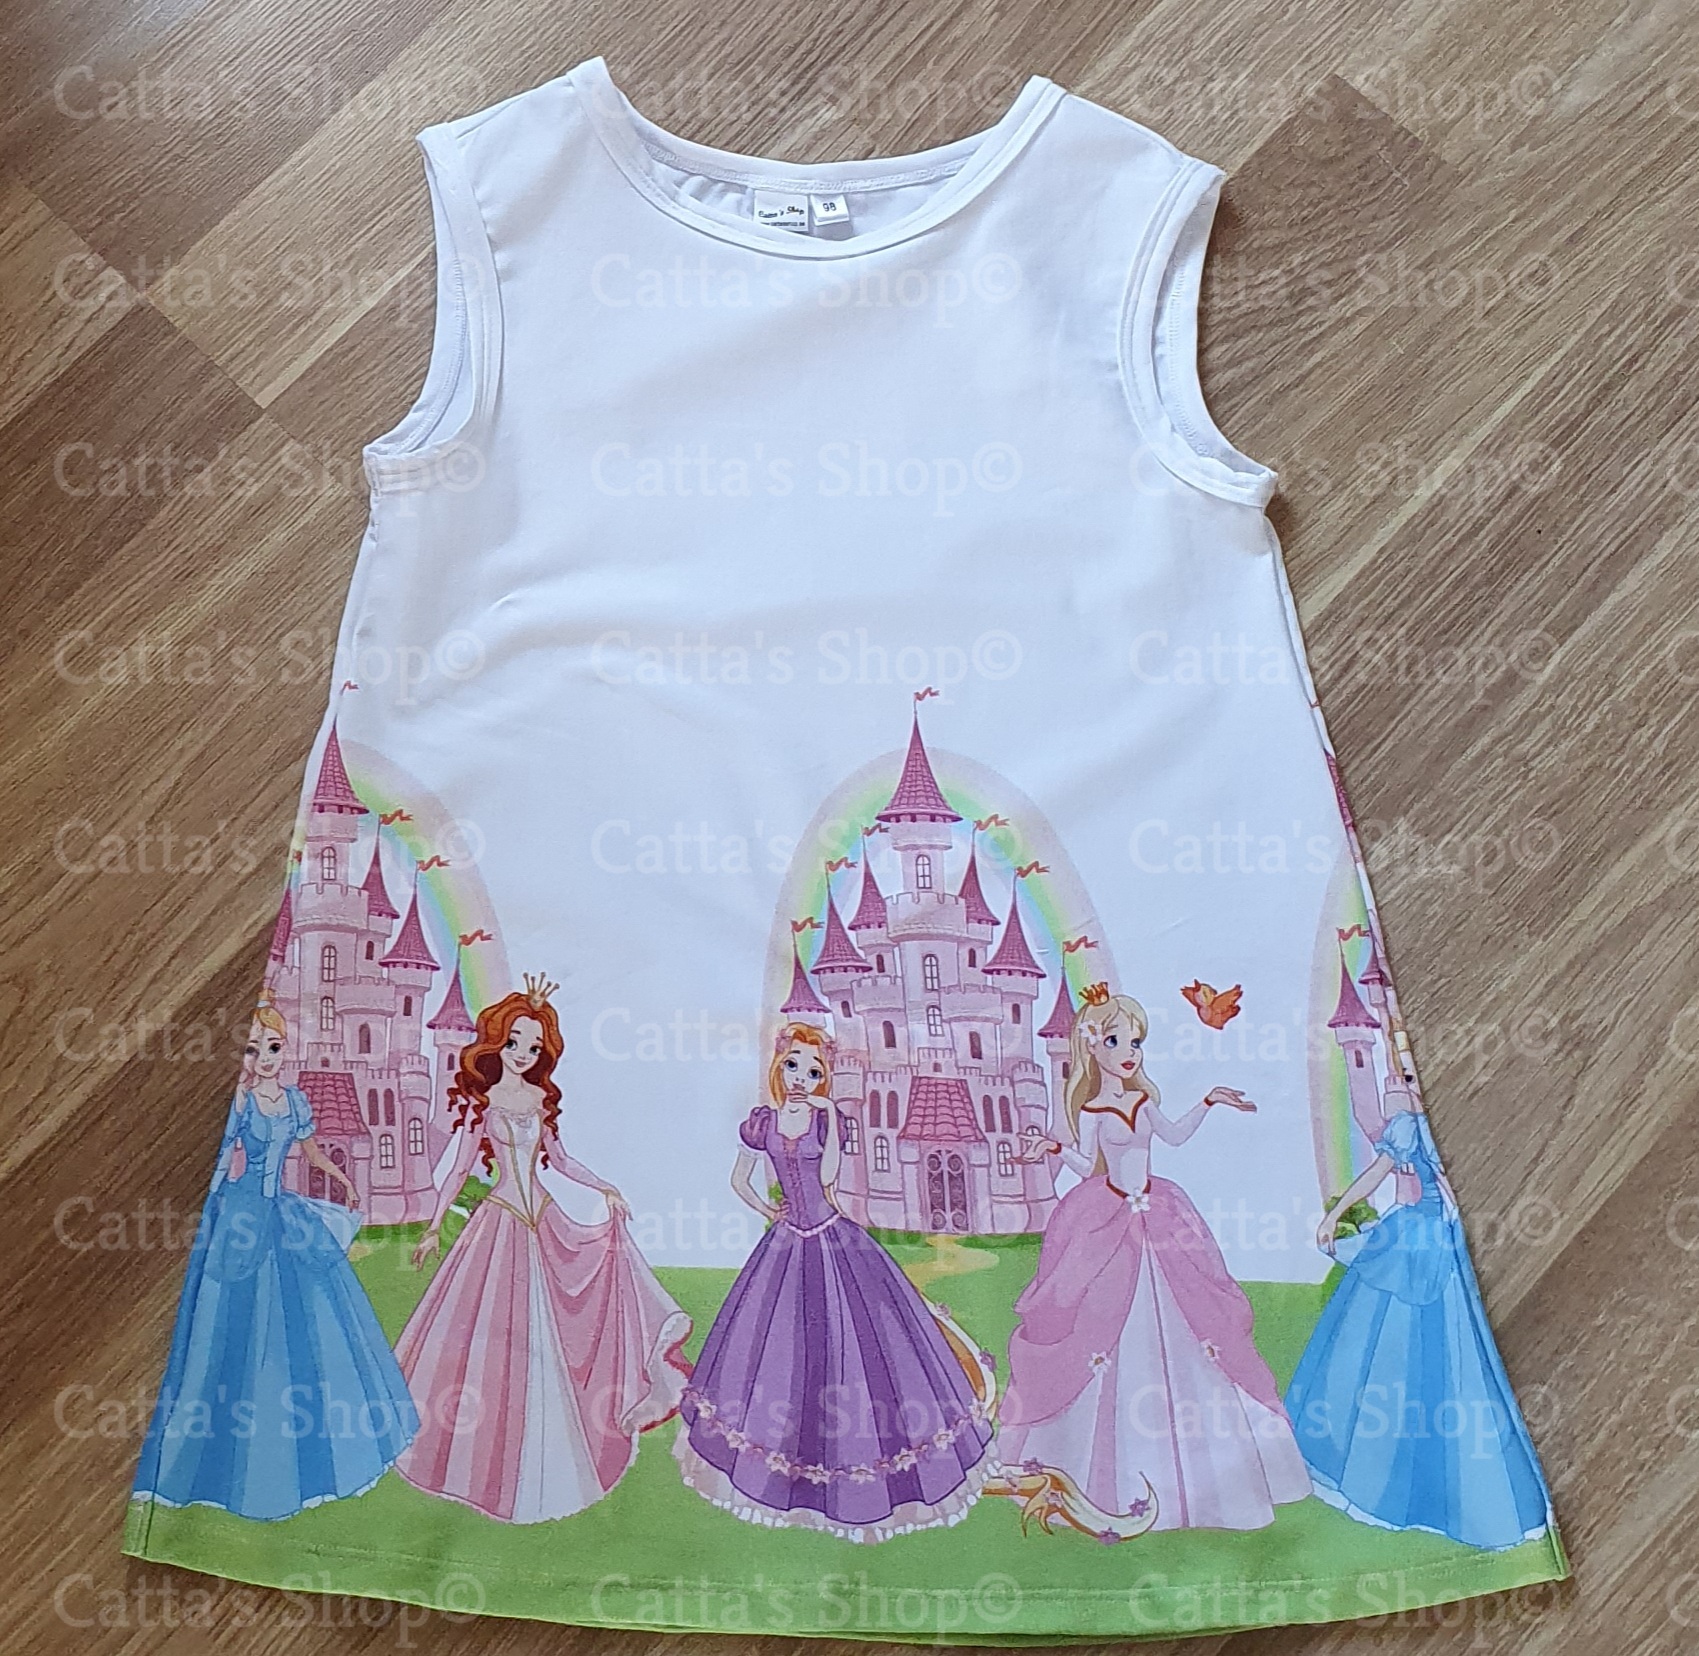 Bilden föreställer en klänning med prinsessor i ekologisk jersey/trikå.